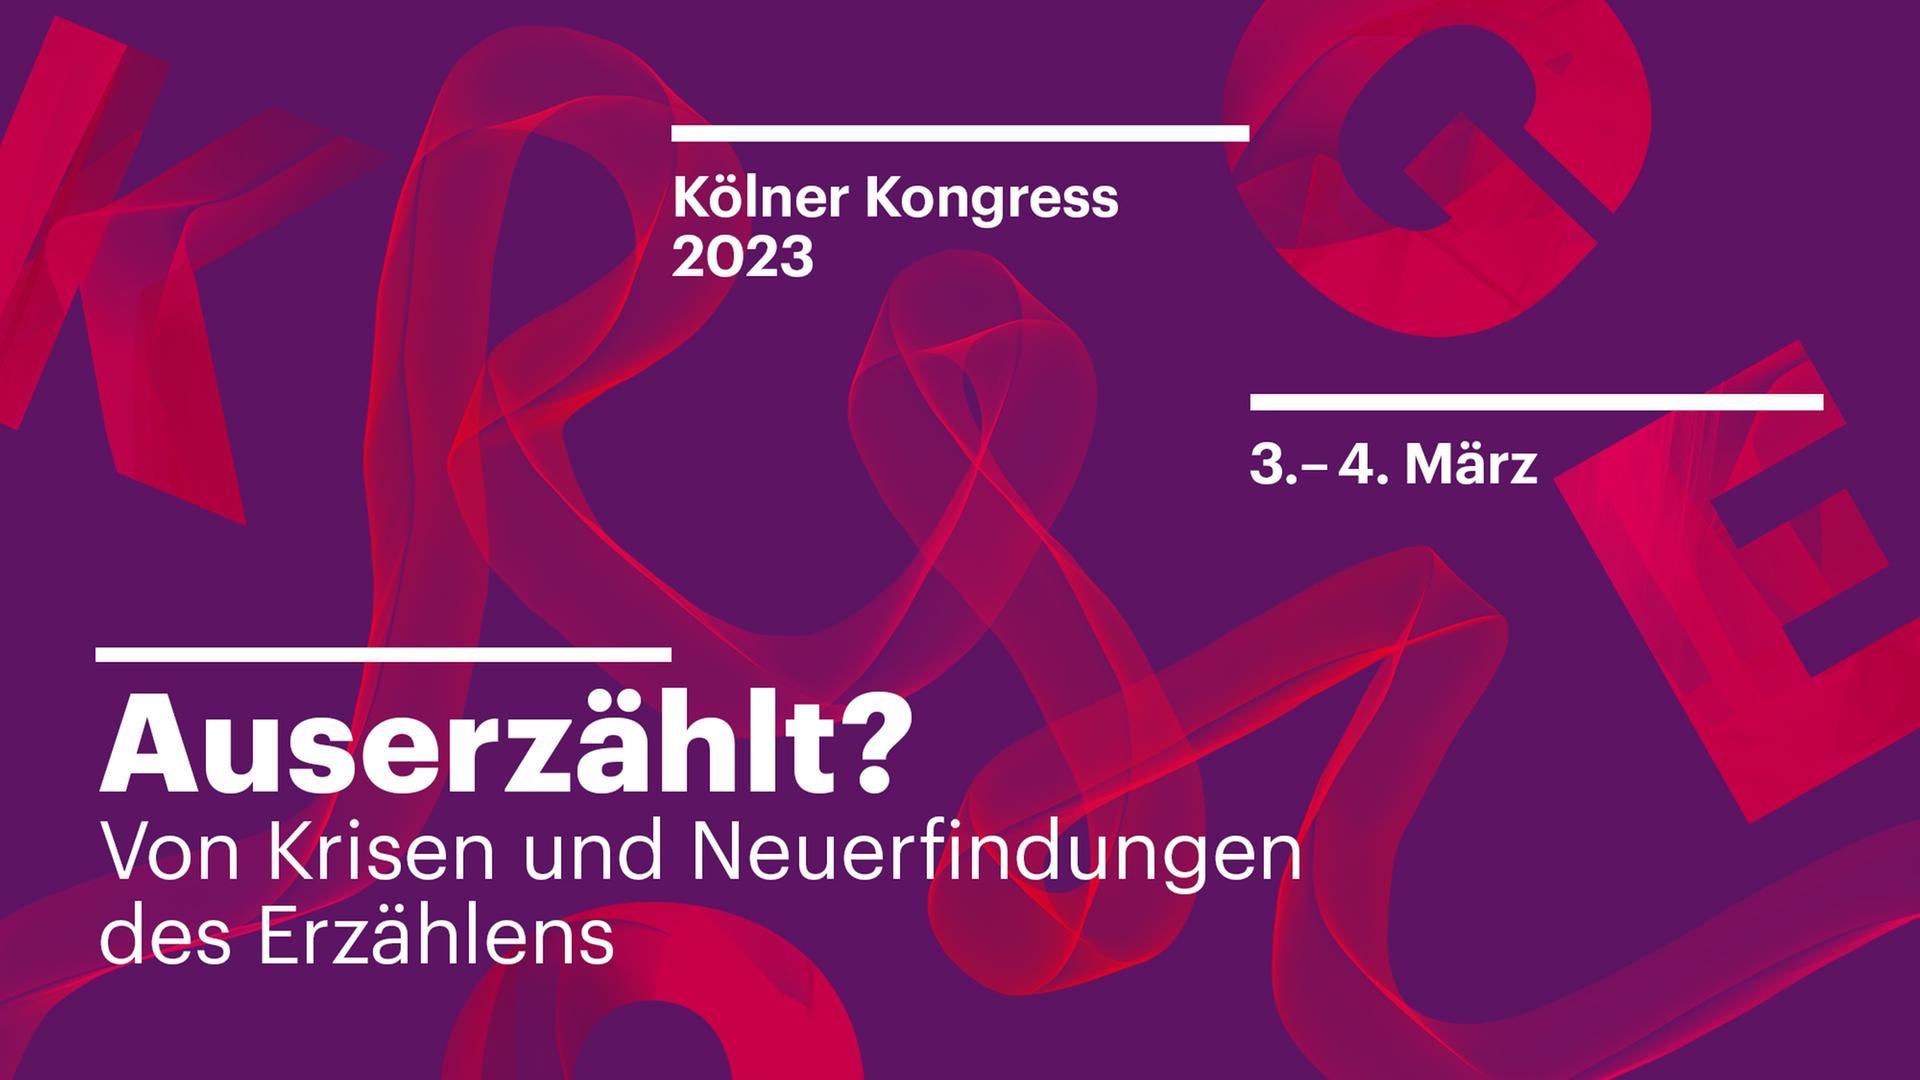 Kölner Kongress 2023: Auserzählt? Von Krisen und Neuerfindungen des Erzählens. Eine Veranstaltung von Deutschlandfunk und Deutschlandfunk Kultur am 3. und 4. März 2023